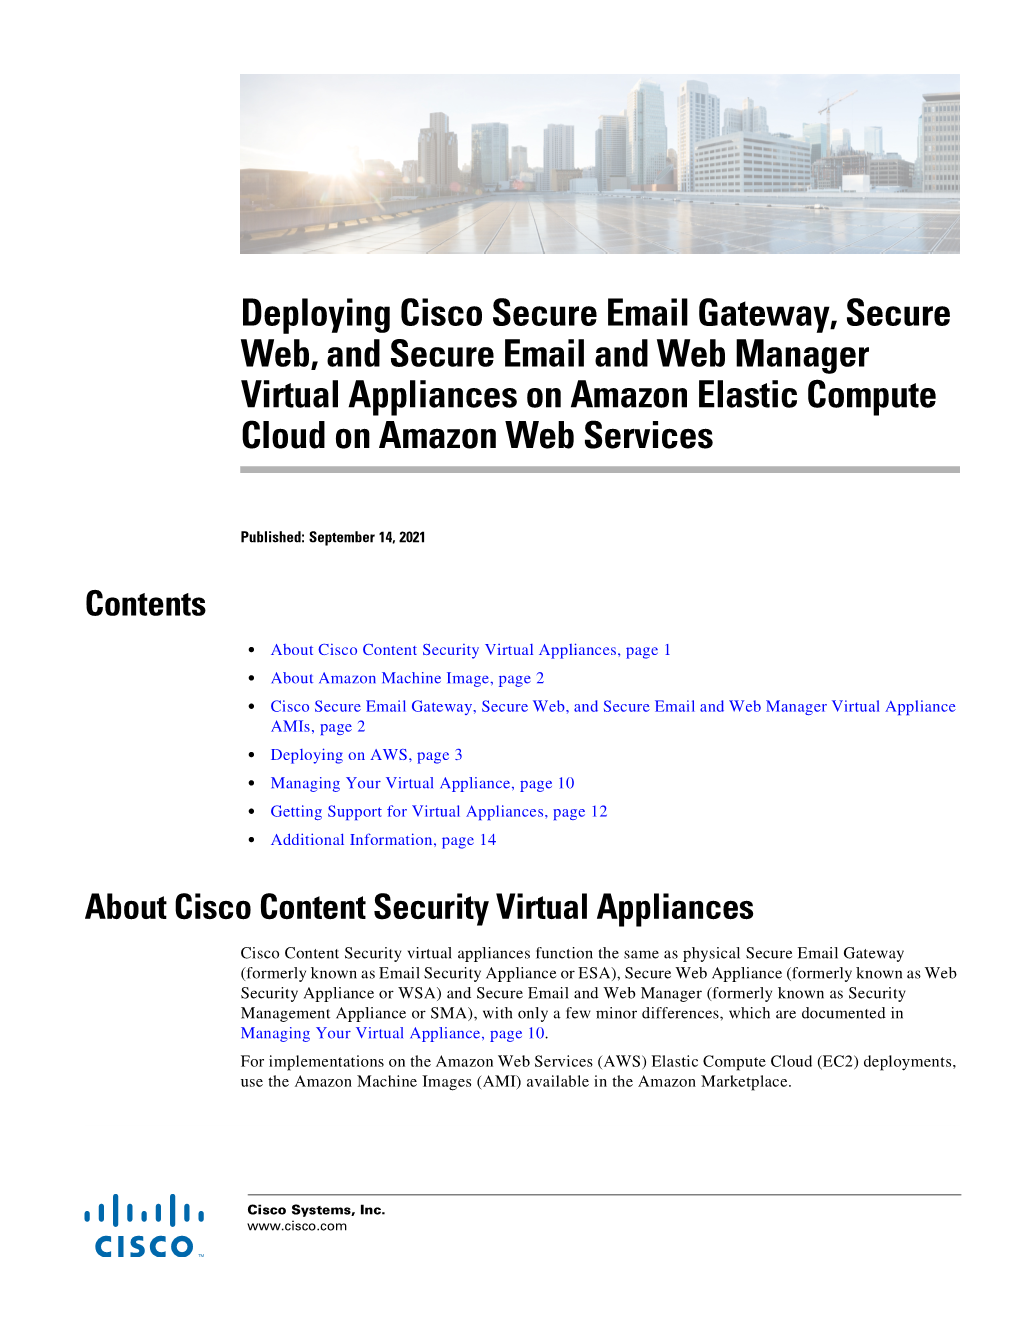 Cisco Content Security Virtual Appliances on AWS EC2